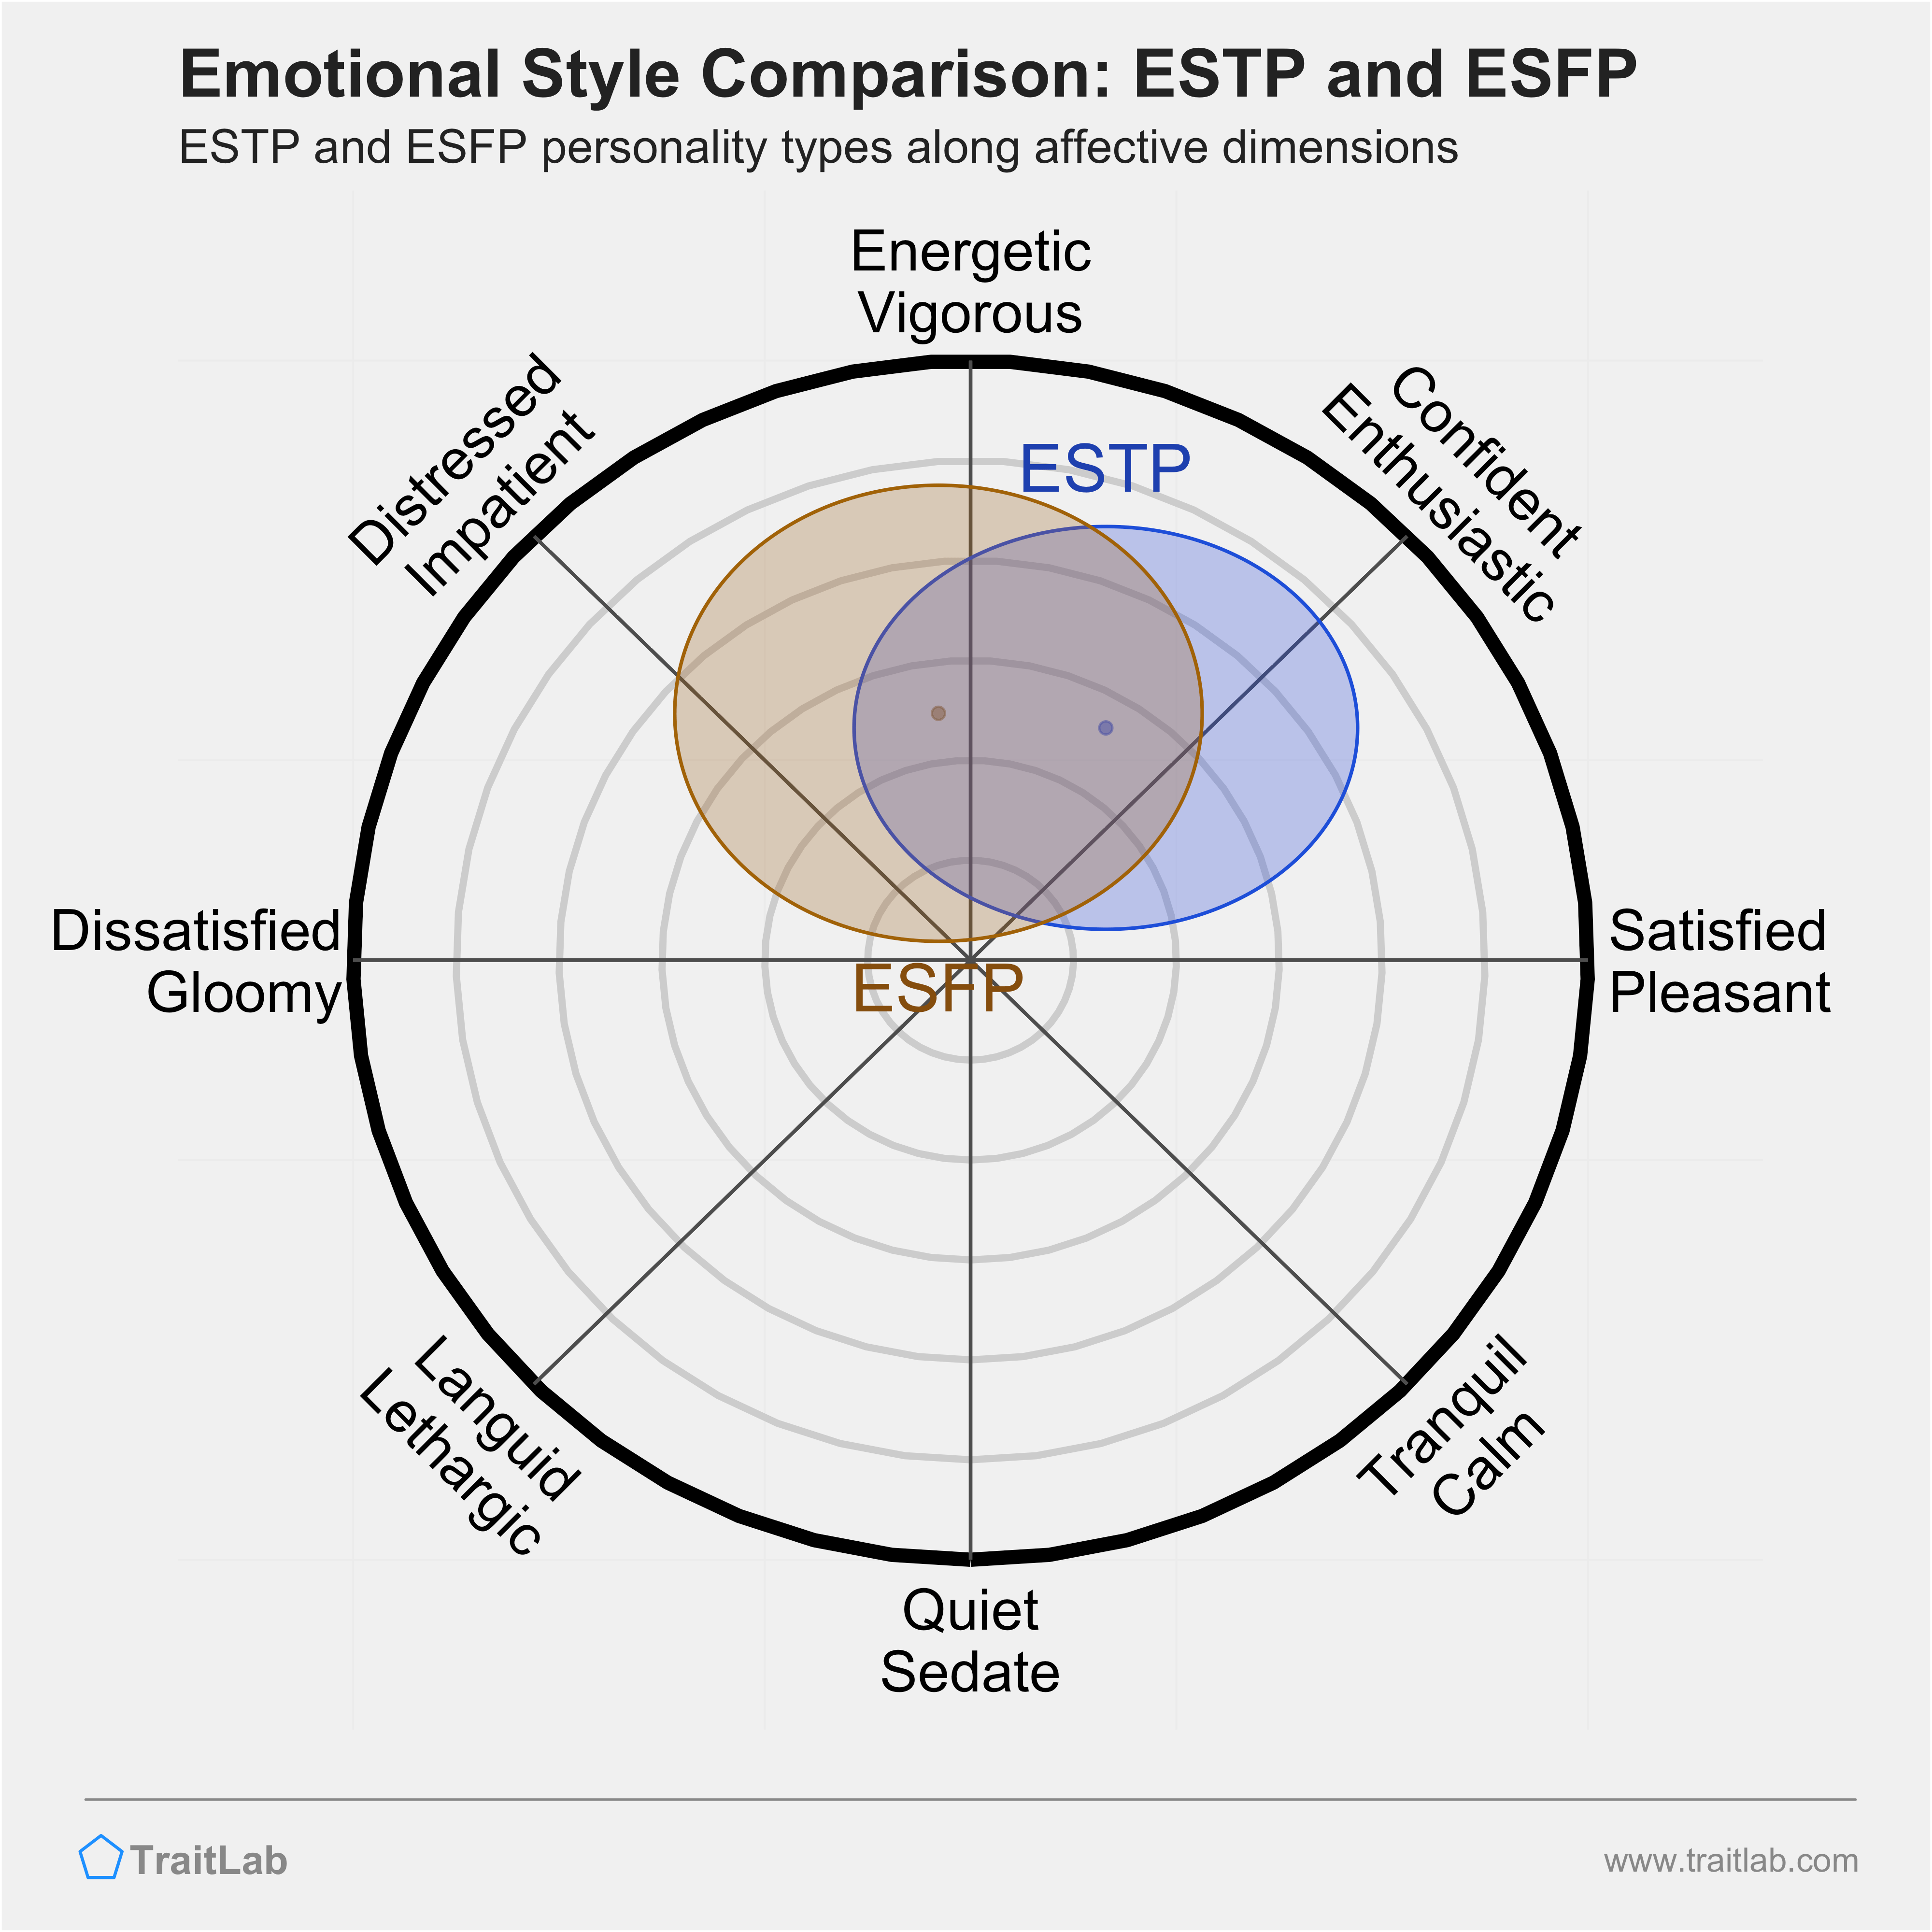 ESTP and ESFP comparison across emotional (affective) dimensions